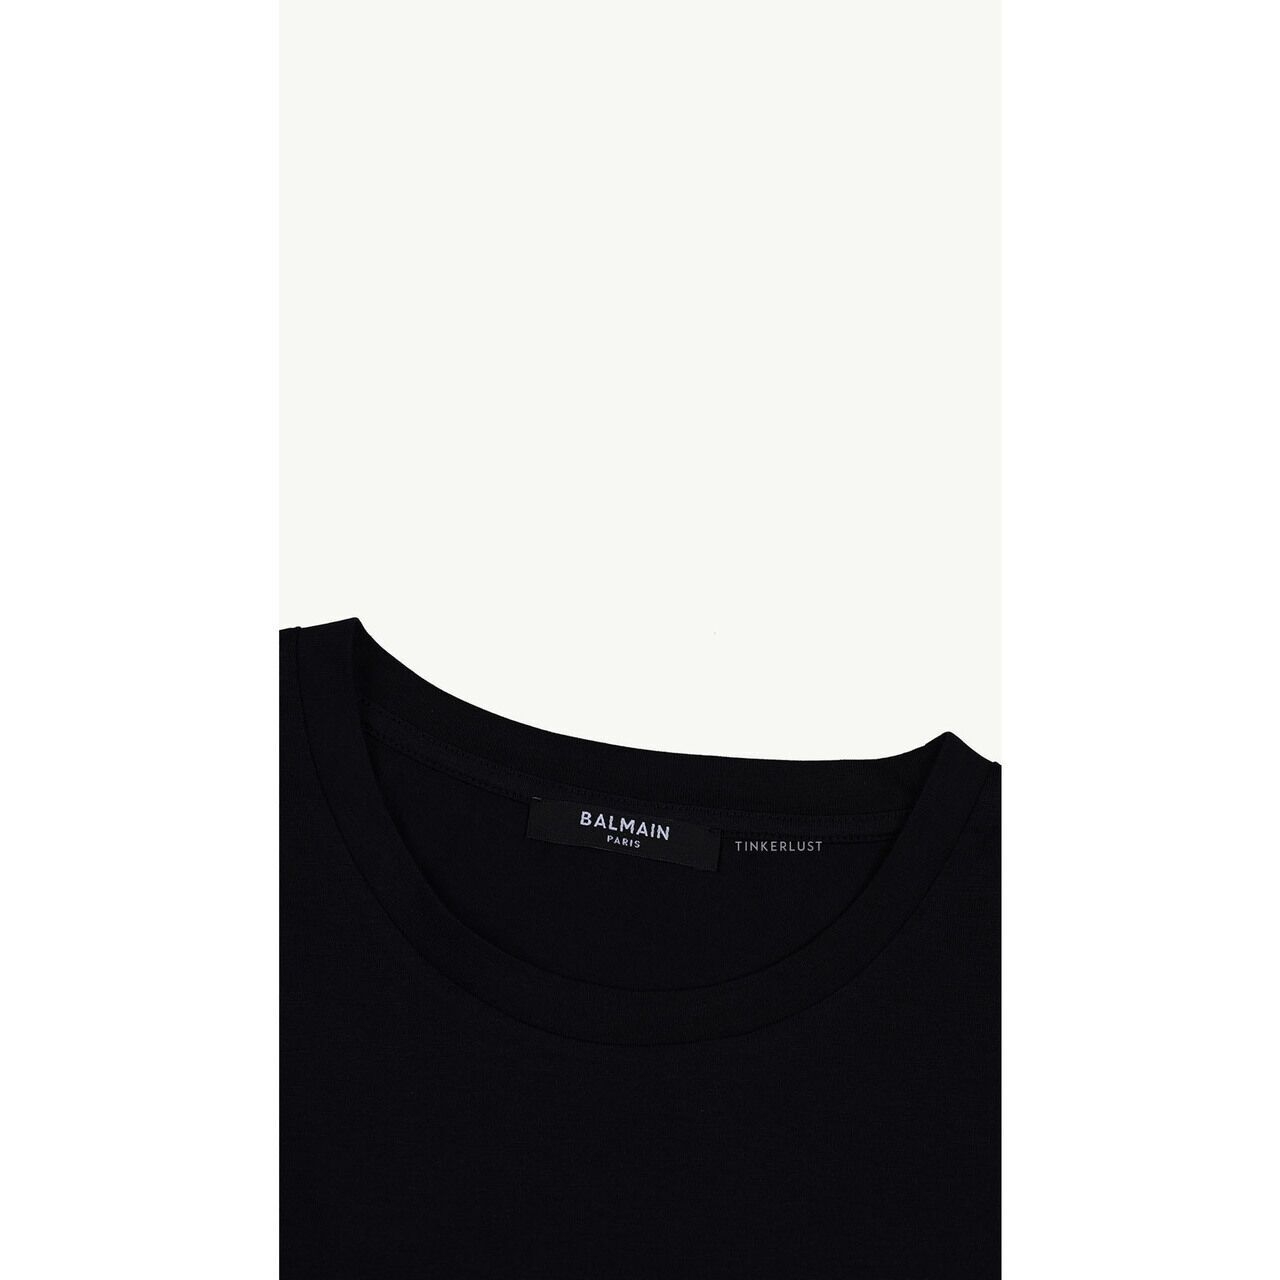 Balmain Women Balmain Paris Flocked Suede Logo T-Shirt in Black/White